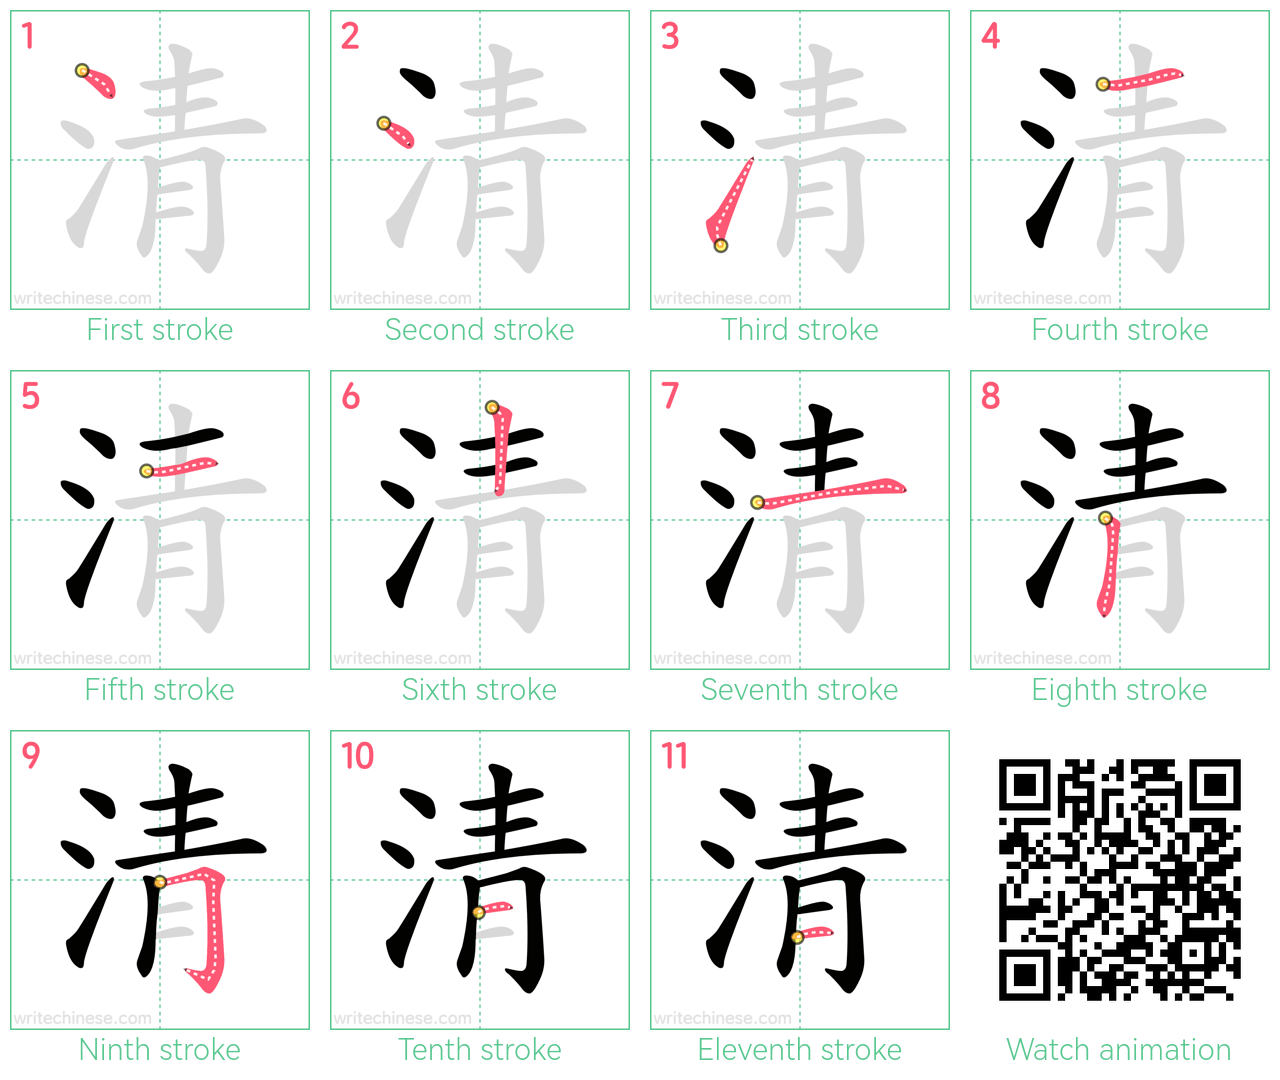 清 step-by-step stroke order diagrams